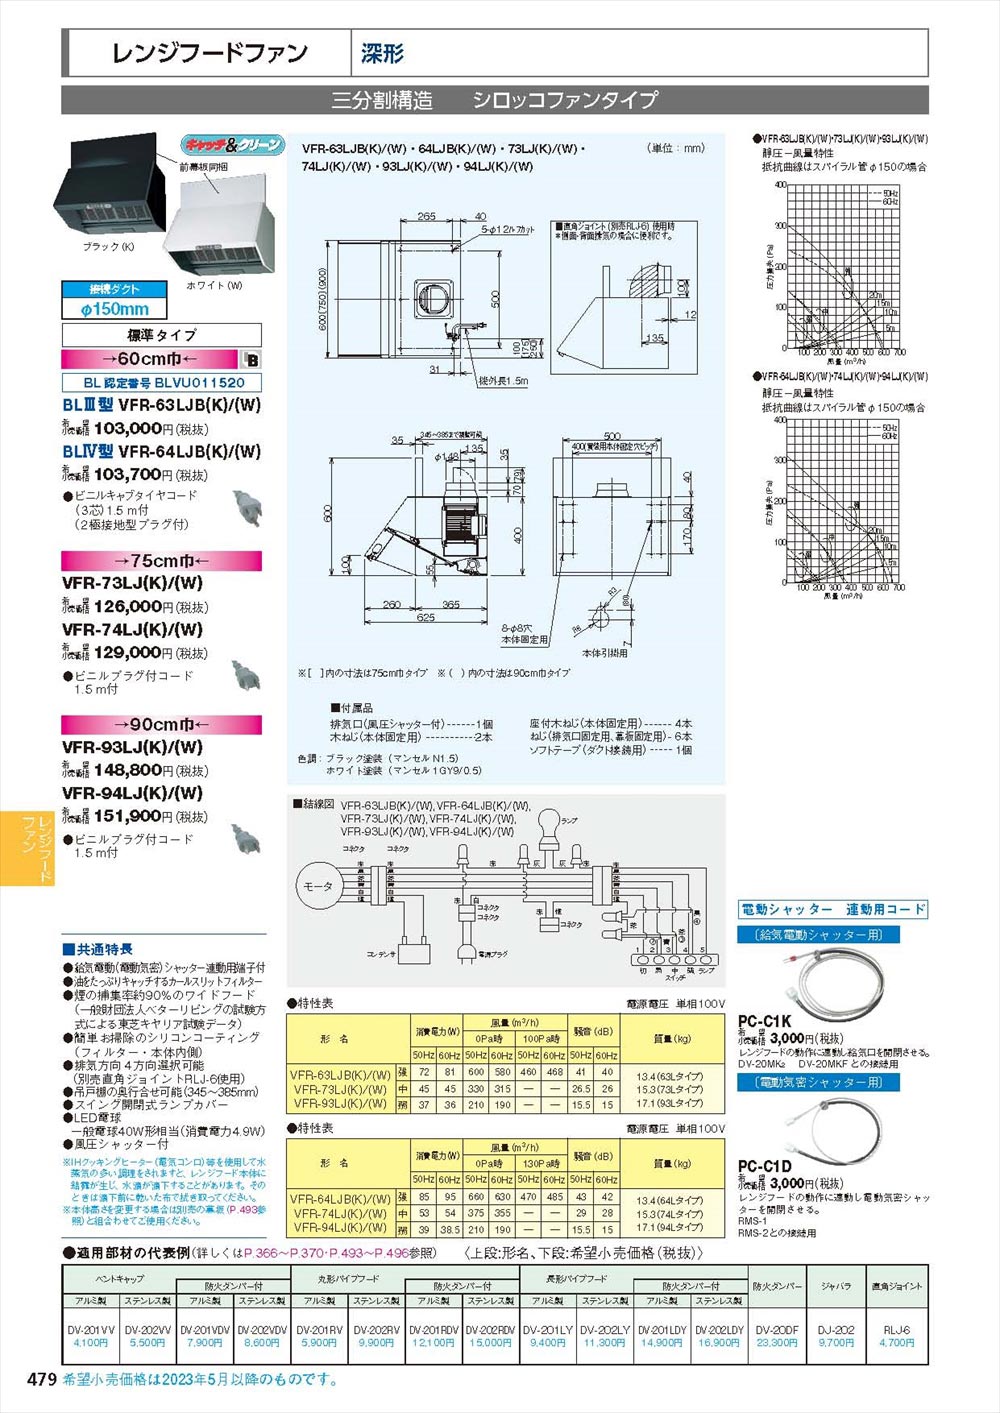 キッチン家電 東芝キャリア 深形レンジフードファン ホワイト 60cm 戸建住宅用 VKH-60L1(W) - 1